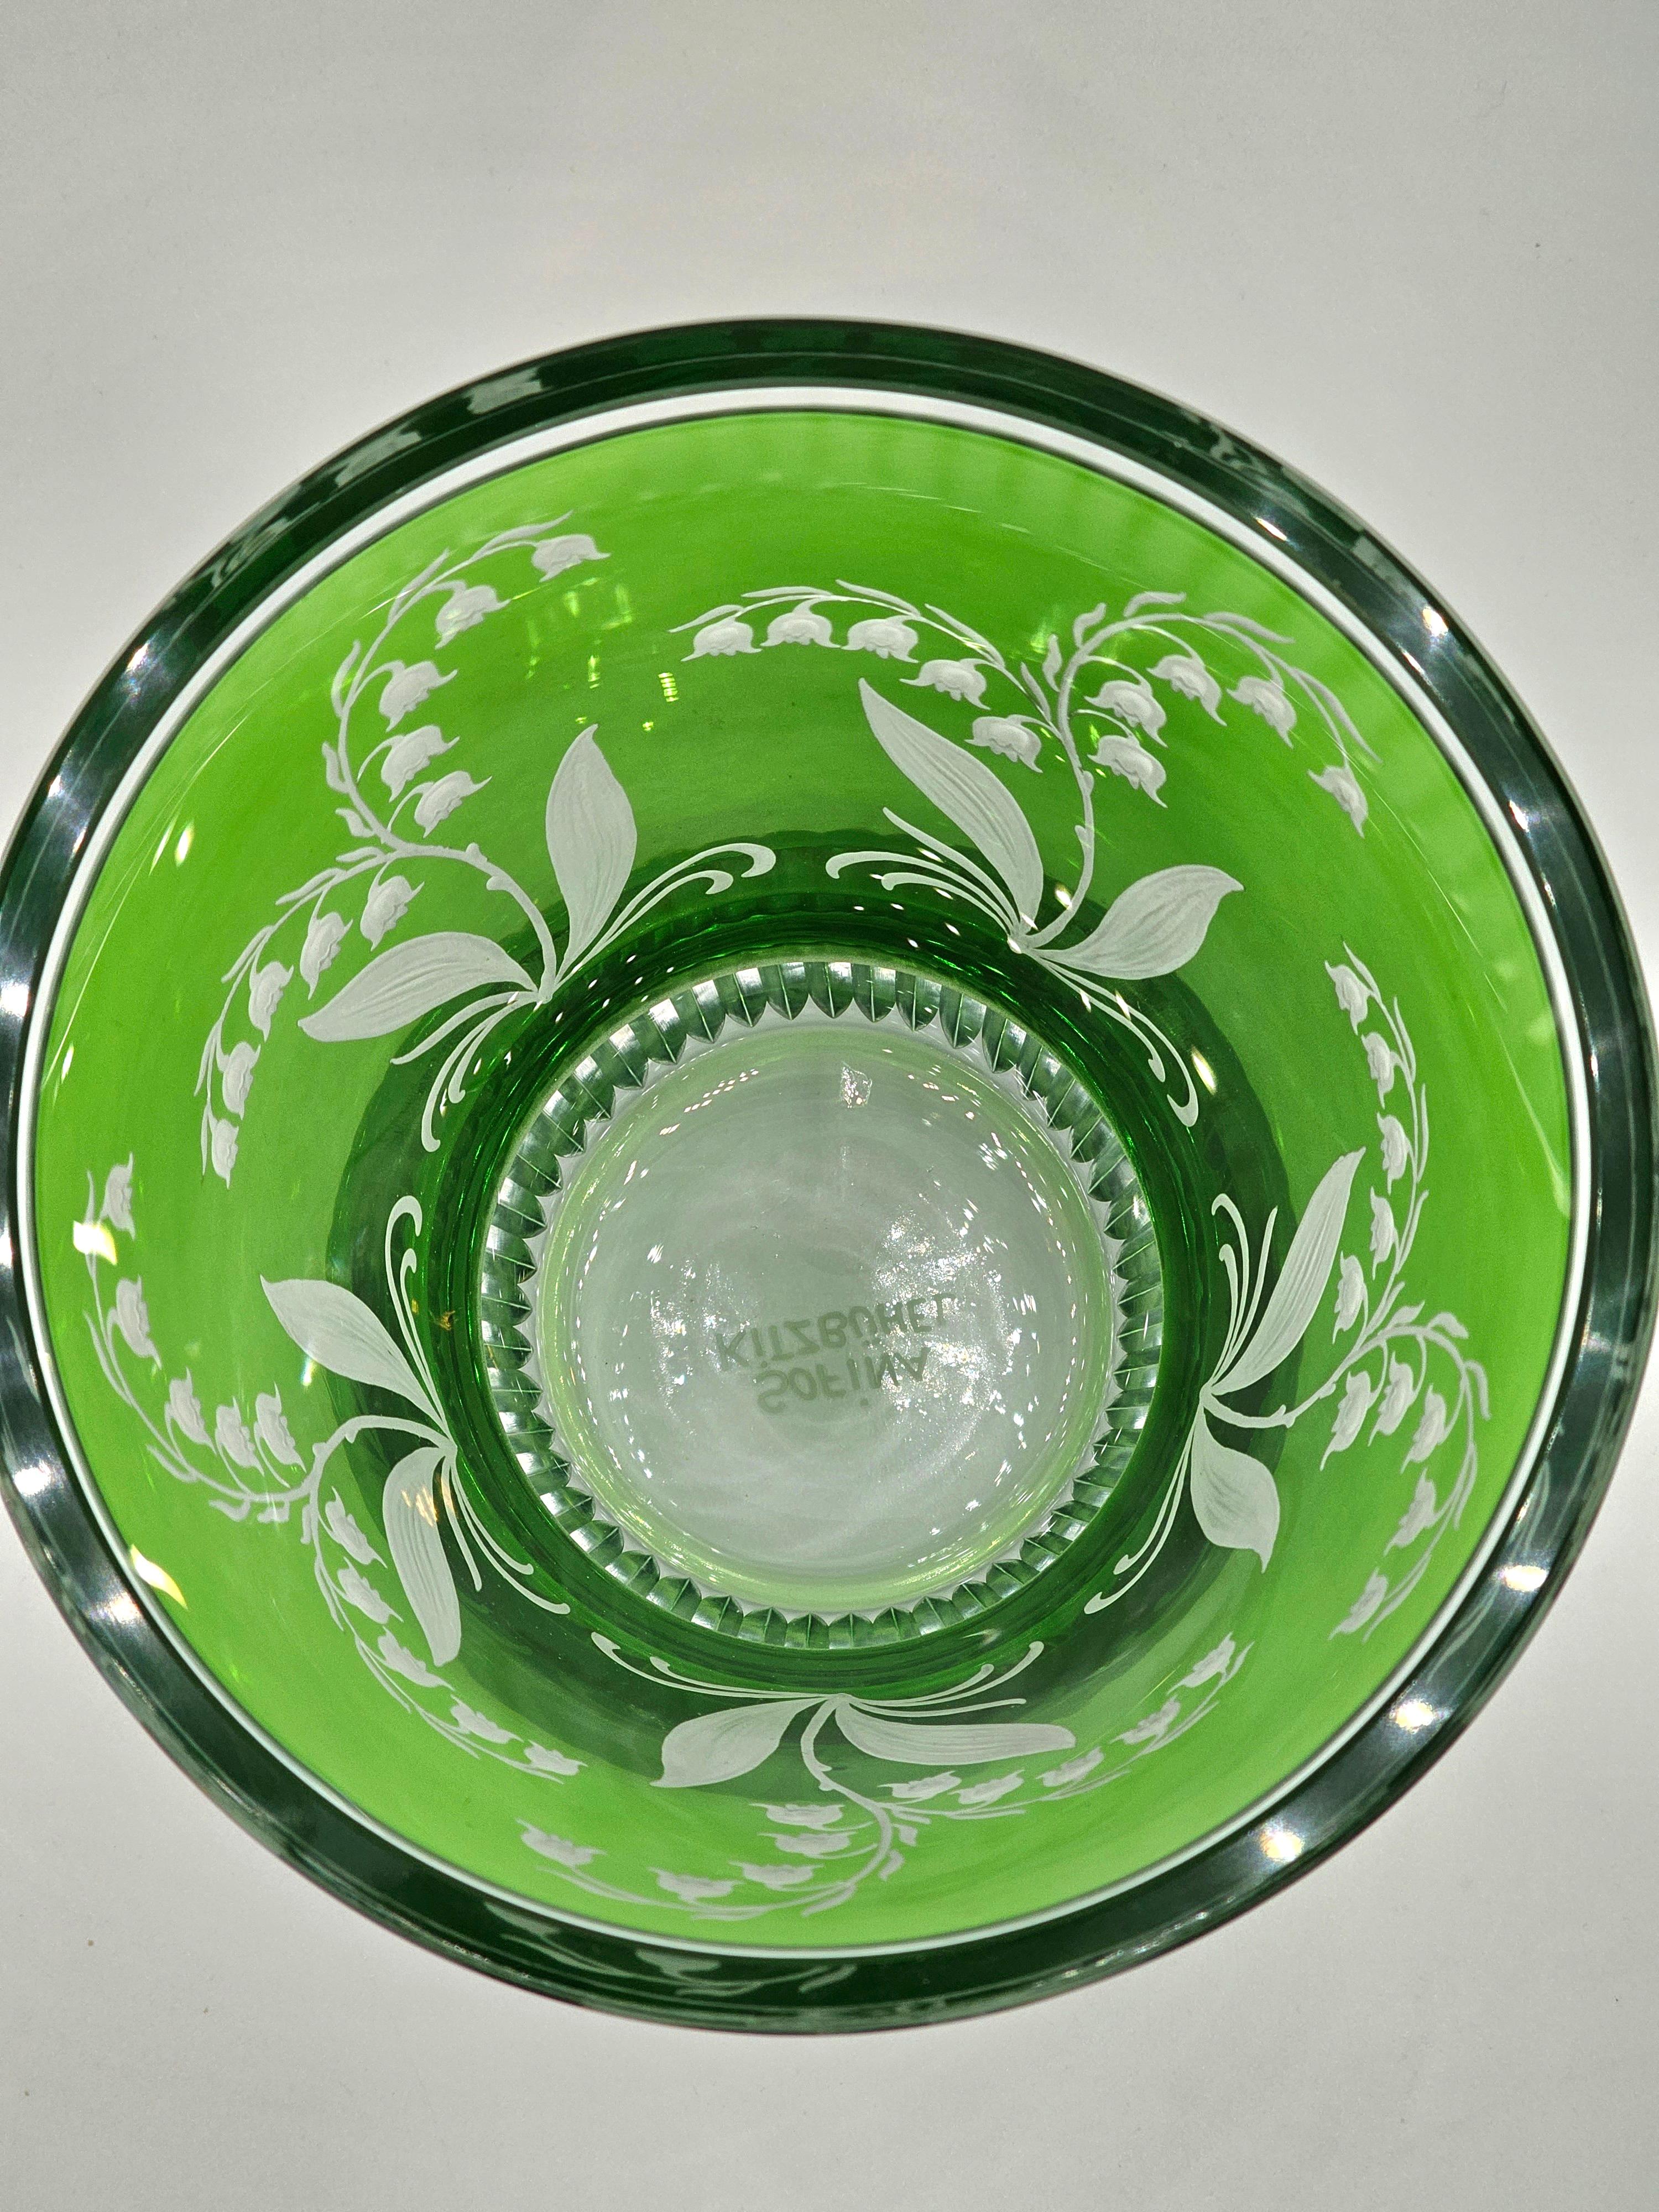 Vase/Laterne aus mundgeblasenem Kristall in grünem Glas mit Maiglöckchendekor. Das Dekor wird von Künstlern freihändig graviert und der Boden des Glases wird von Hand geschnitzt. Das hier gezeigte Glas in grüner Farbe kann auch in anderen Farben wie